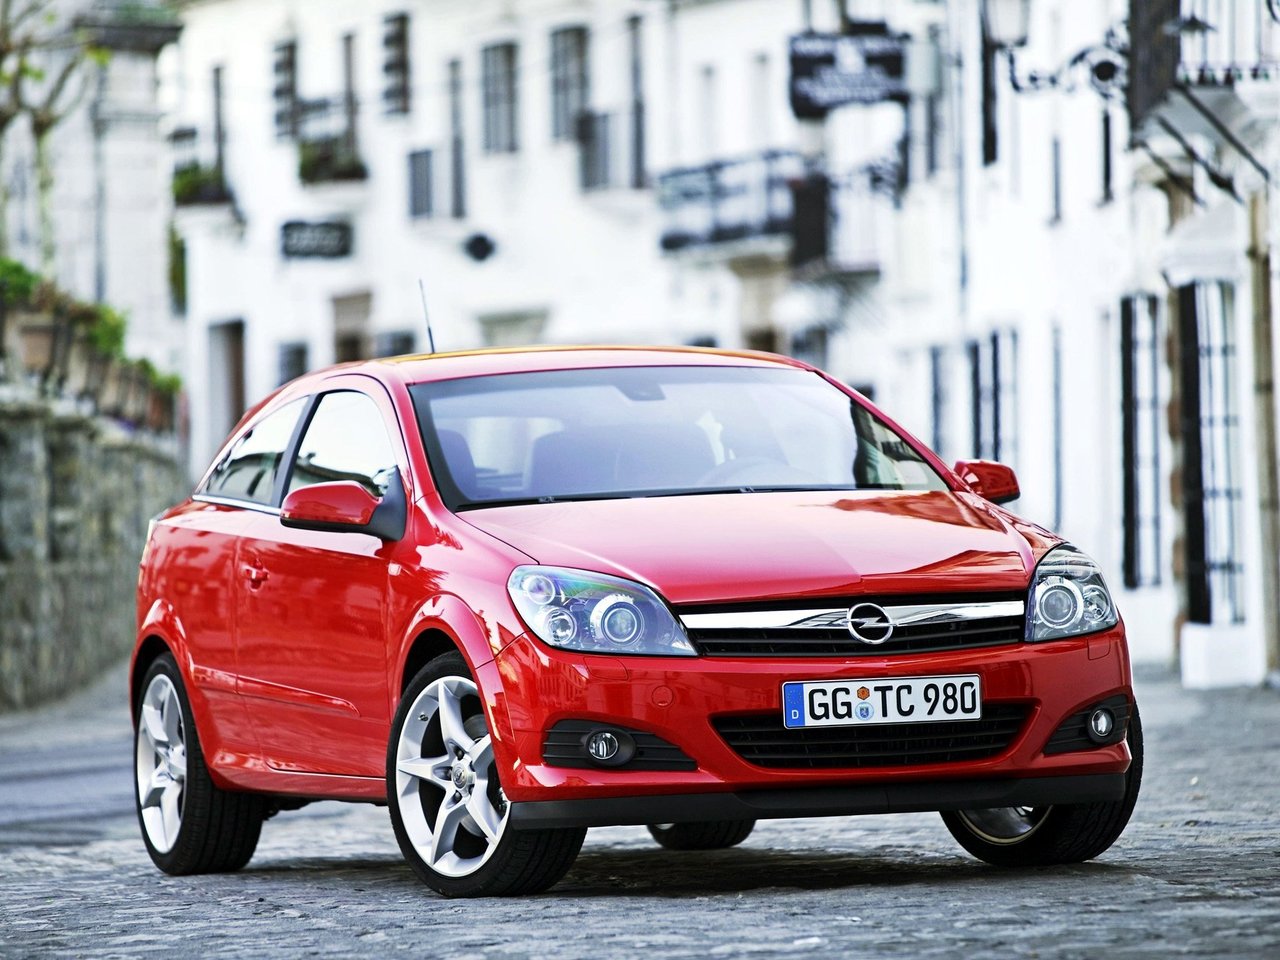 Расход газа семи комплектаций хэтчбека три двери Opel Astra. Разница стоимости заправки газом и бензином. Автономный пробег до и после установки ГБО.